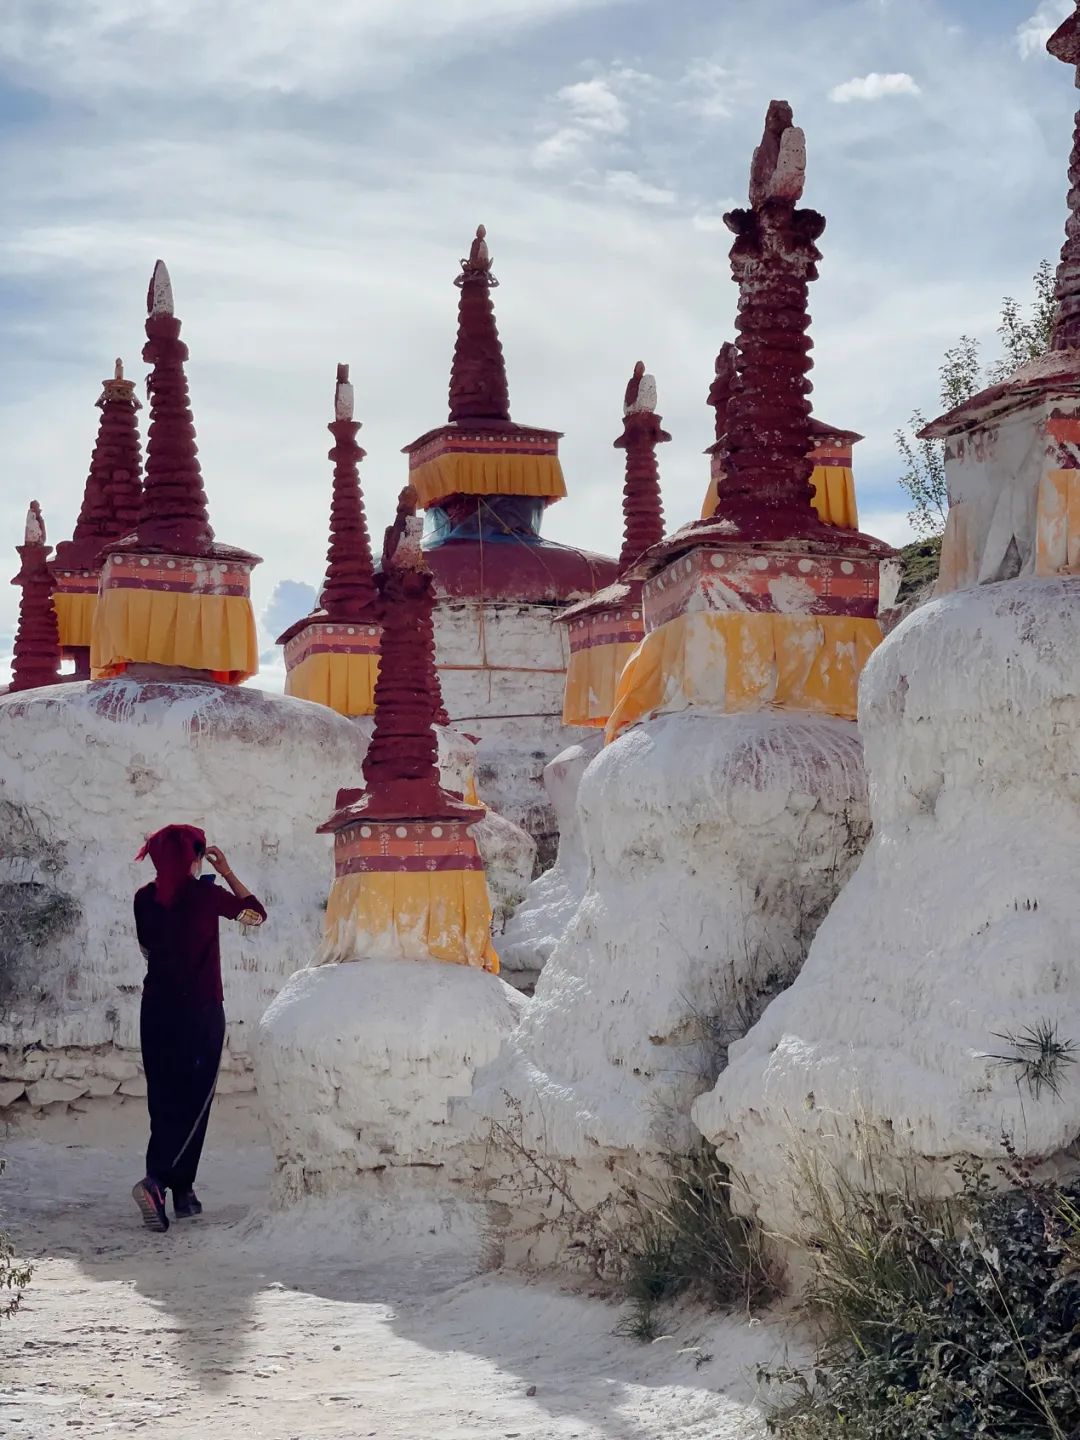 记明基摄影后期大赛《摄手之路》西藏站